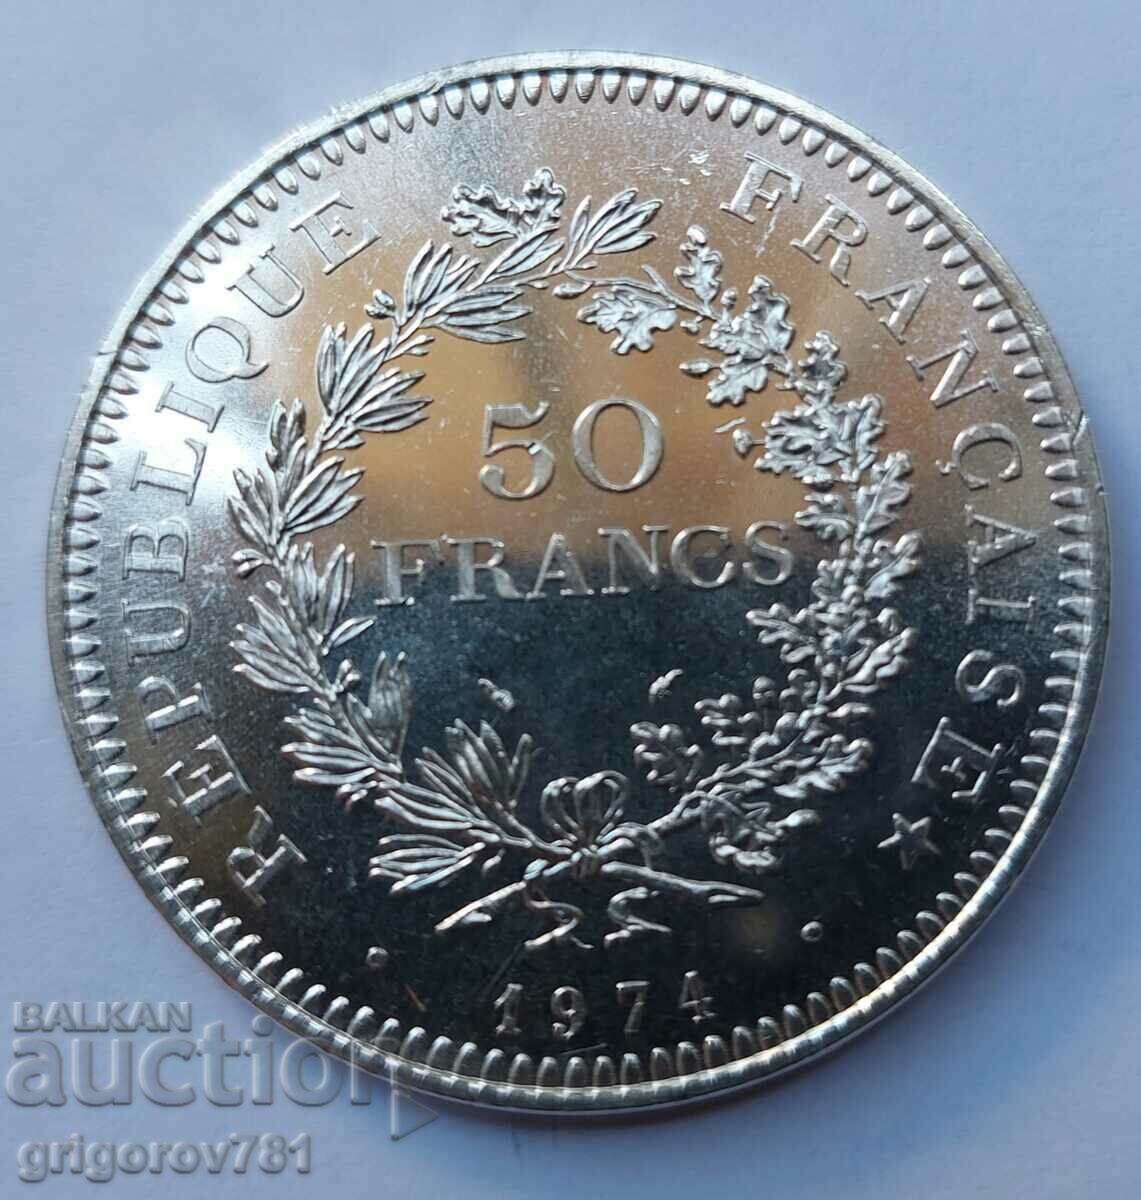 50 Franci Argint Franta 1974 - Moneda de argint #20